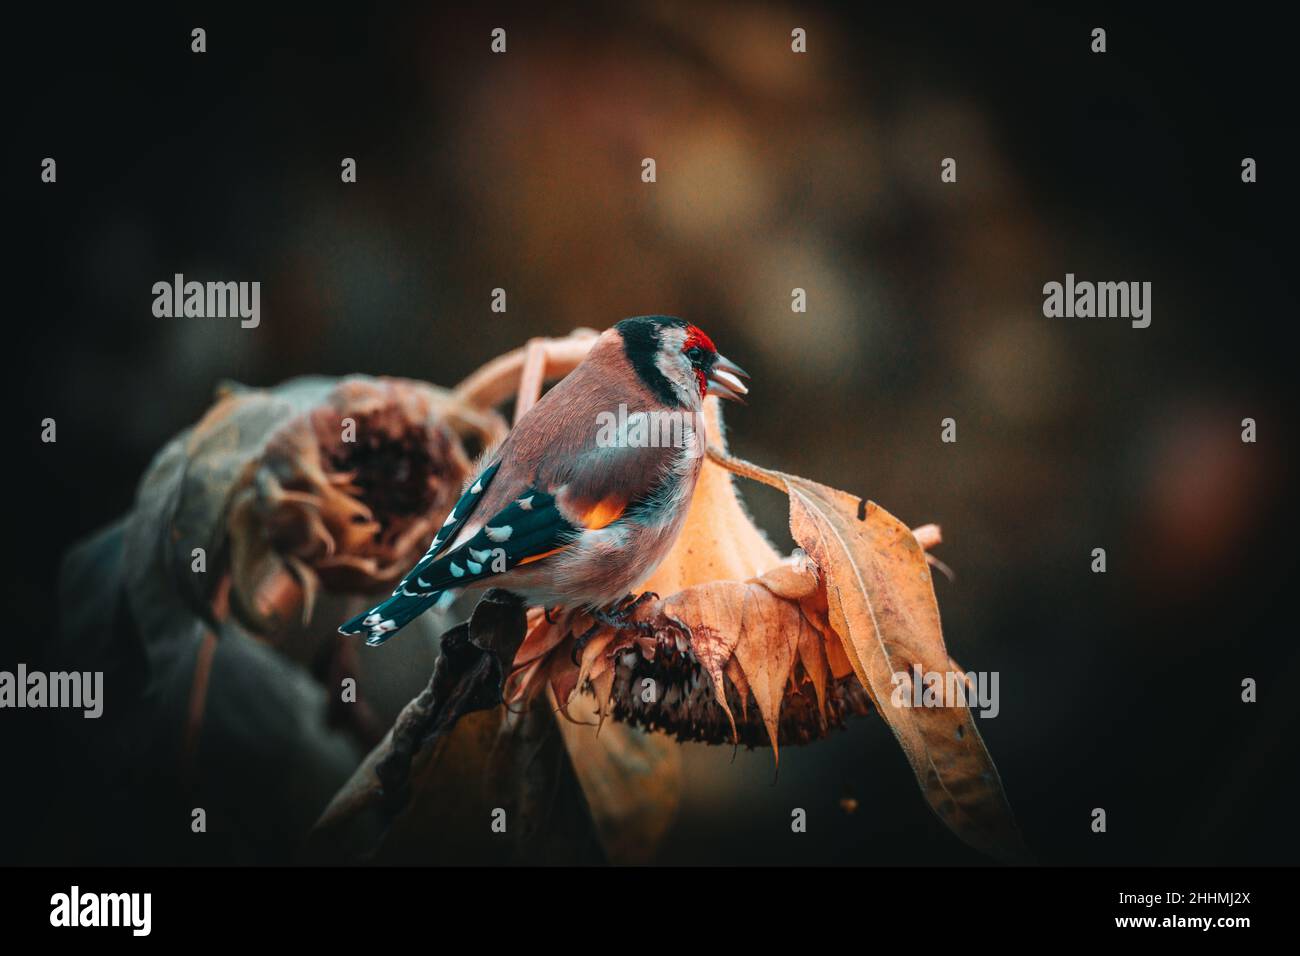 Fotos vom Stieglitz oder auch Distelfink genannt im Garten auf Futtersuche an Sonnenblumen. Porträt vom Stieglitz (Distelfink) im Herbst. Foto de stock